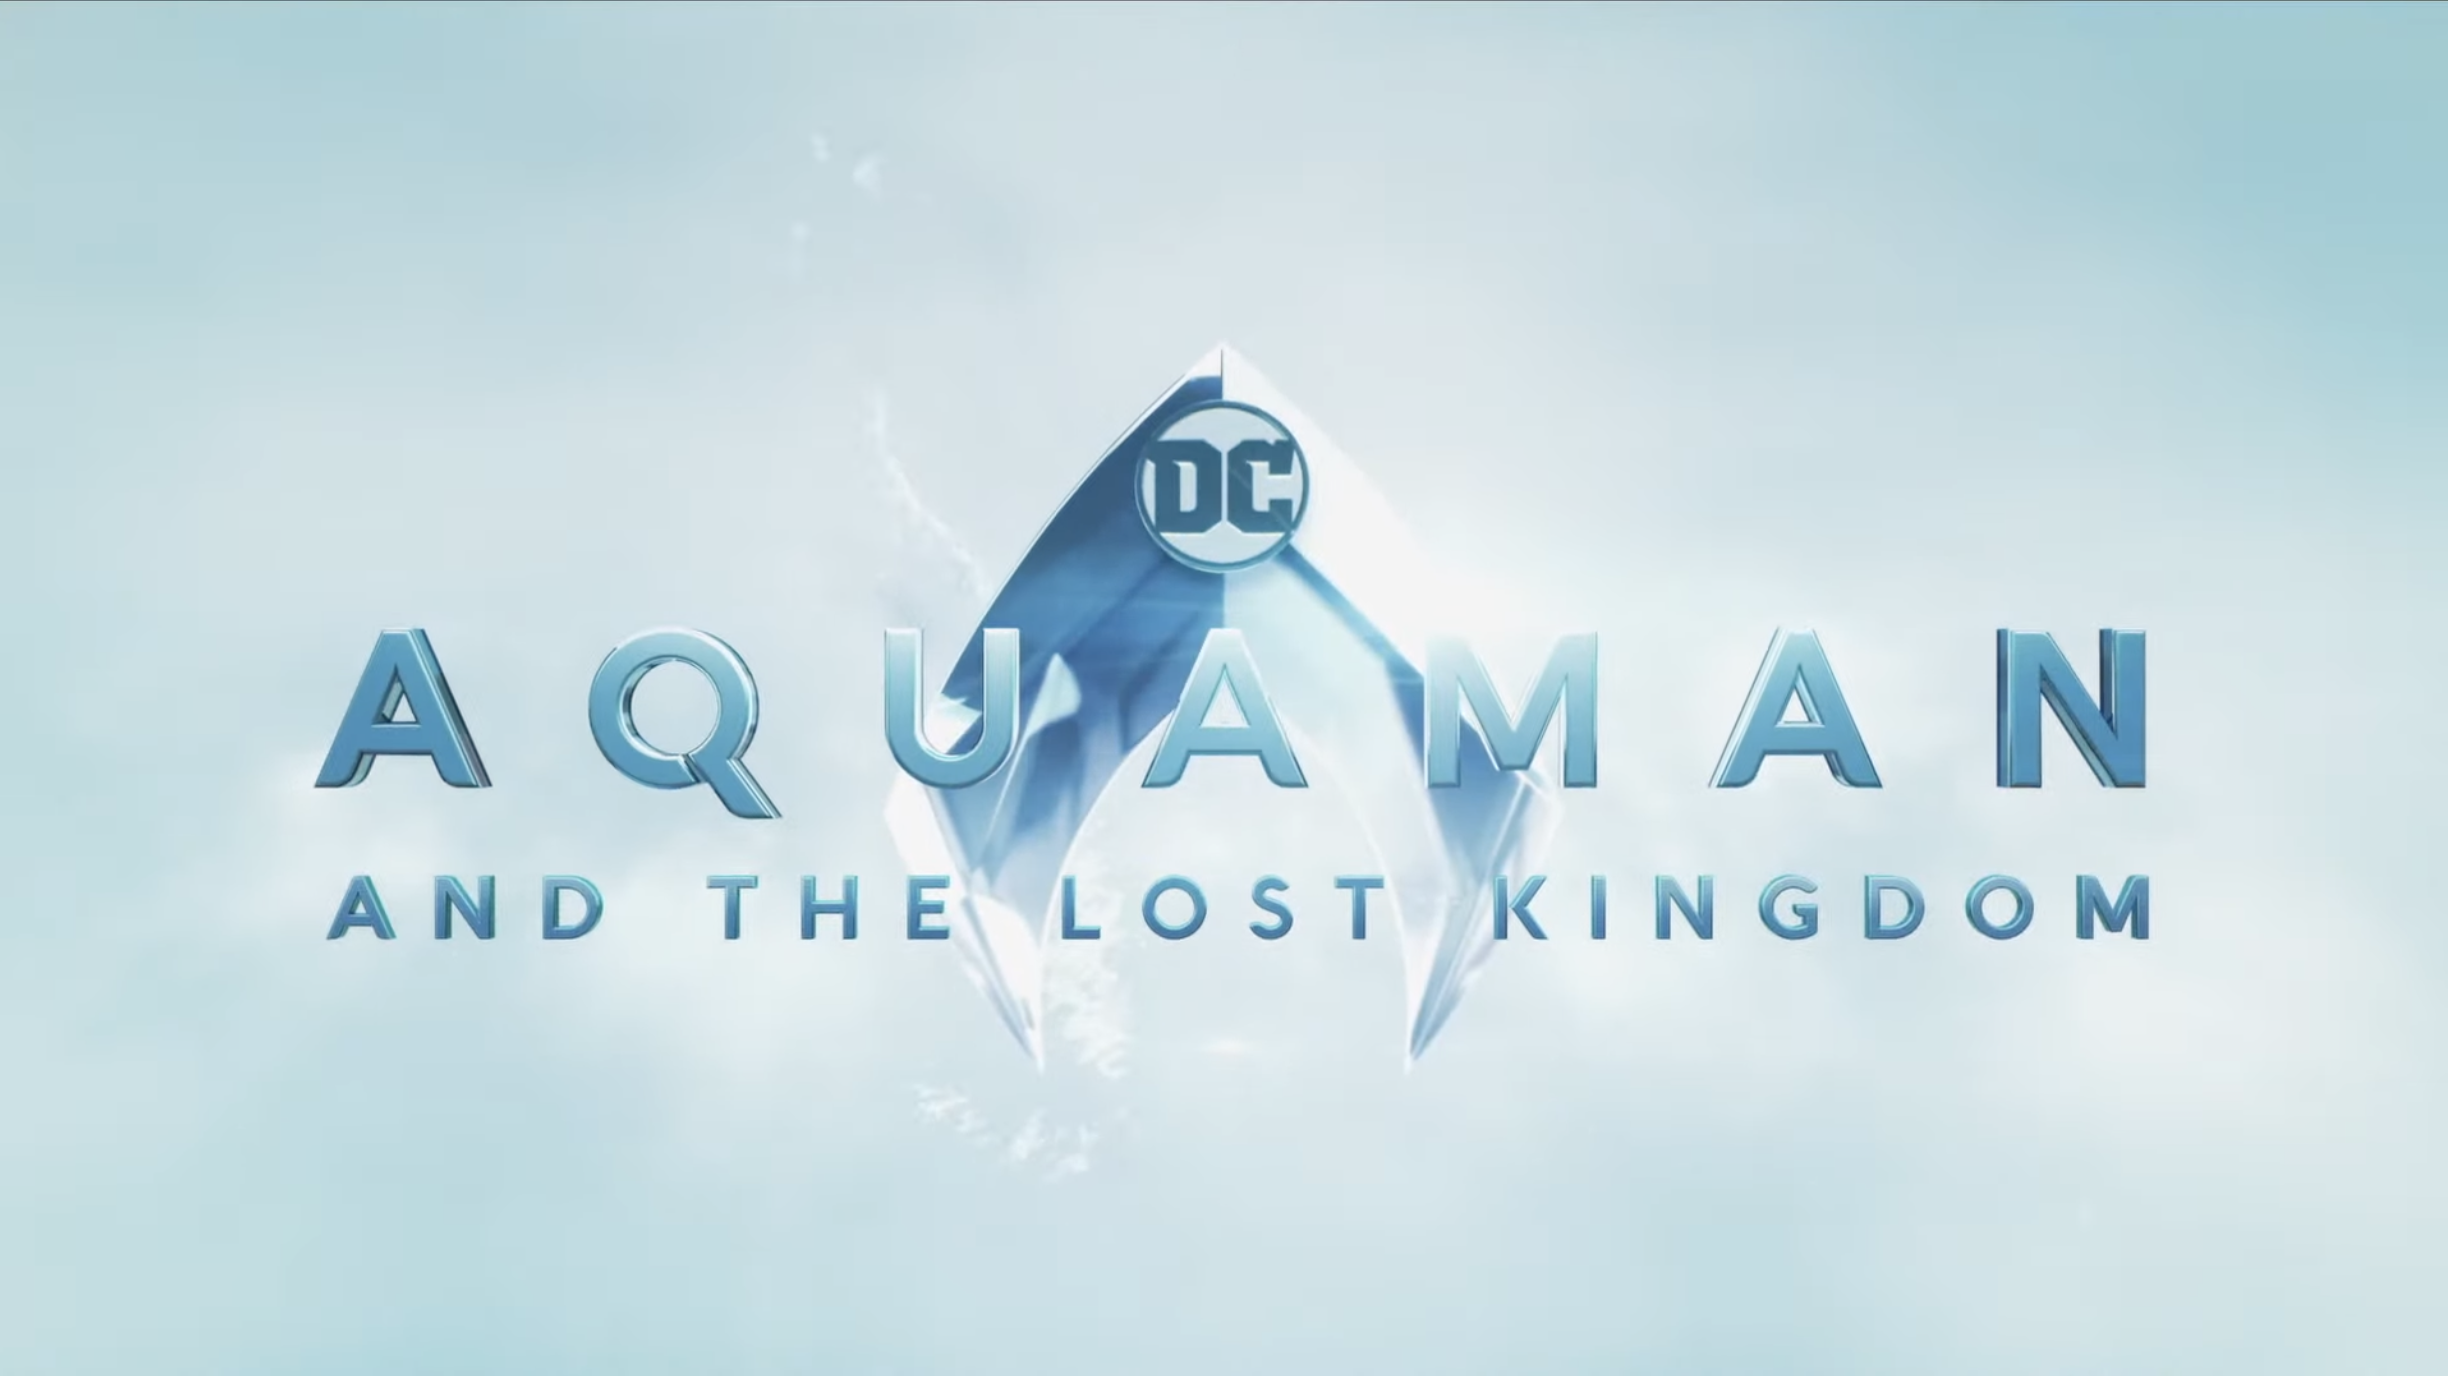 Aquaman content at DC Fandome